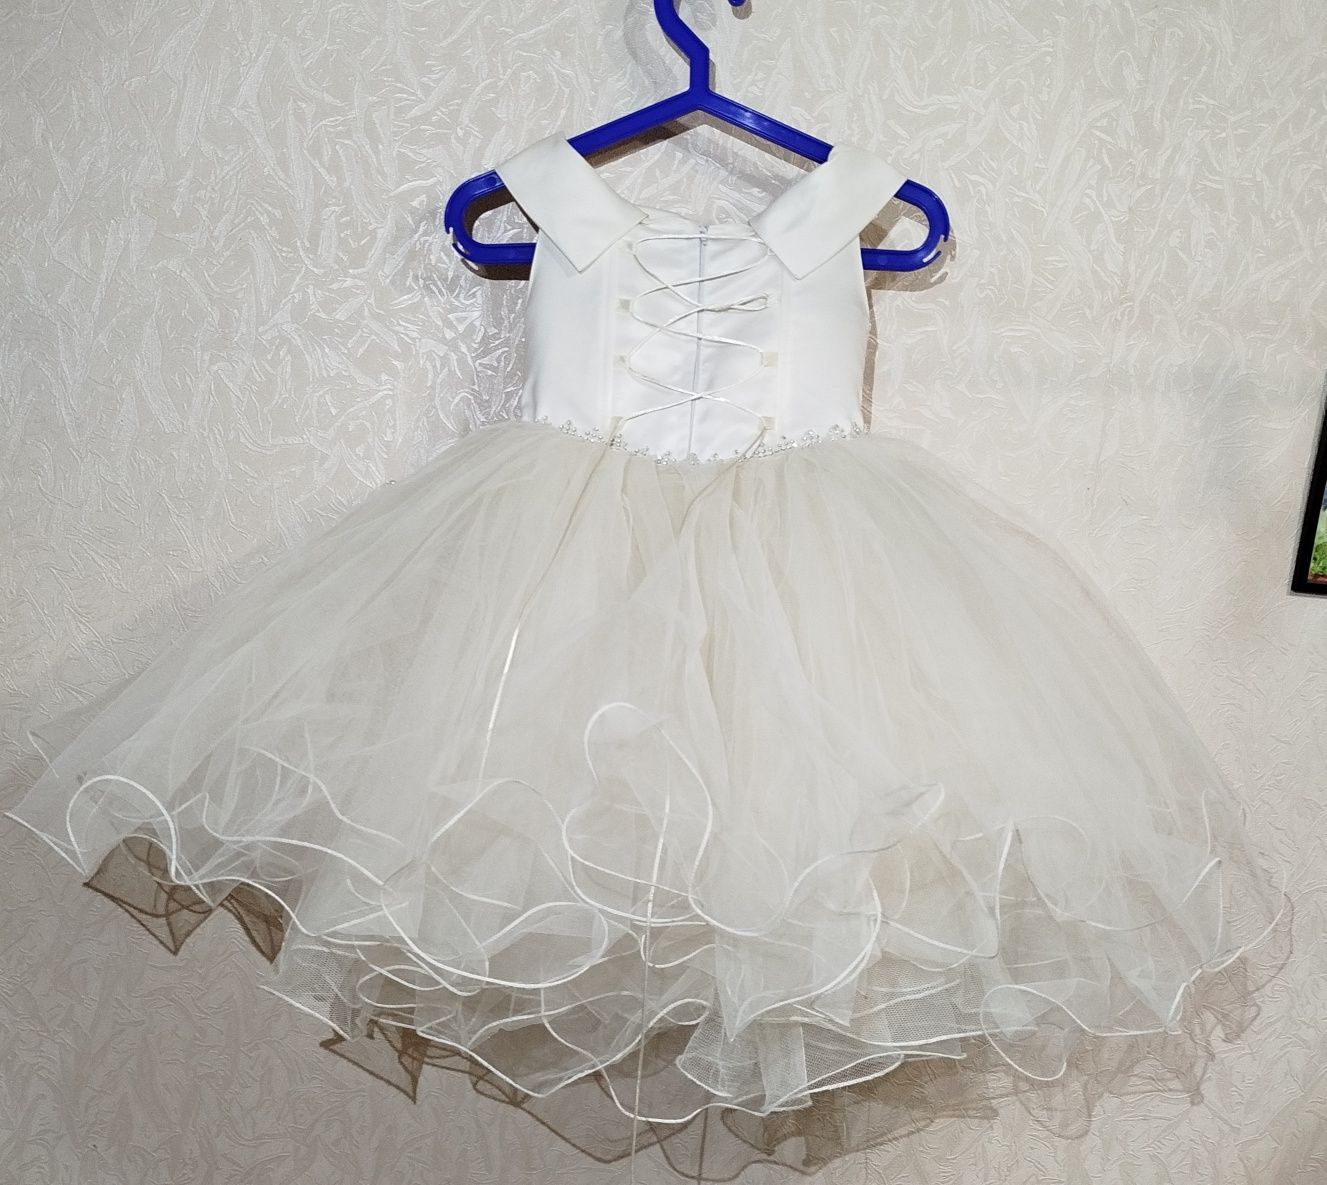 Святкова пишна сукня на дівчинку 5-7 років